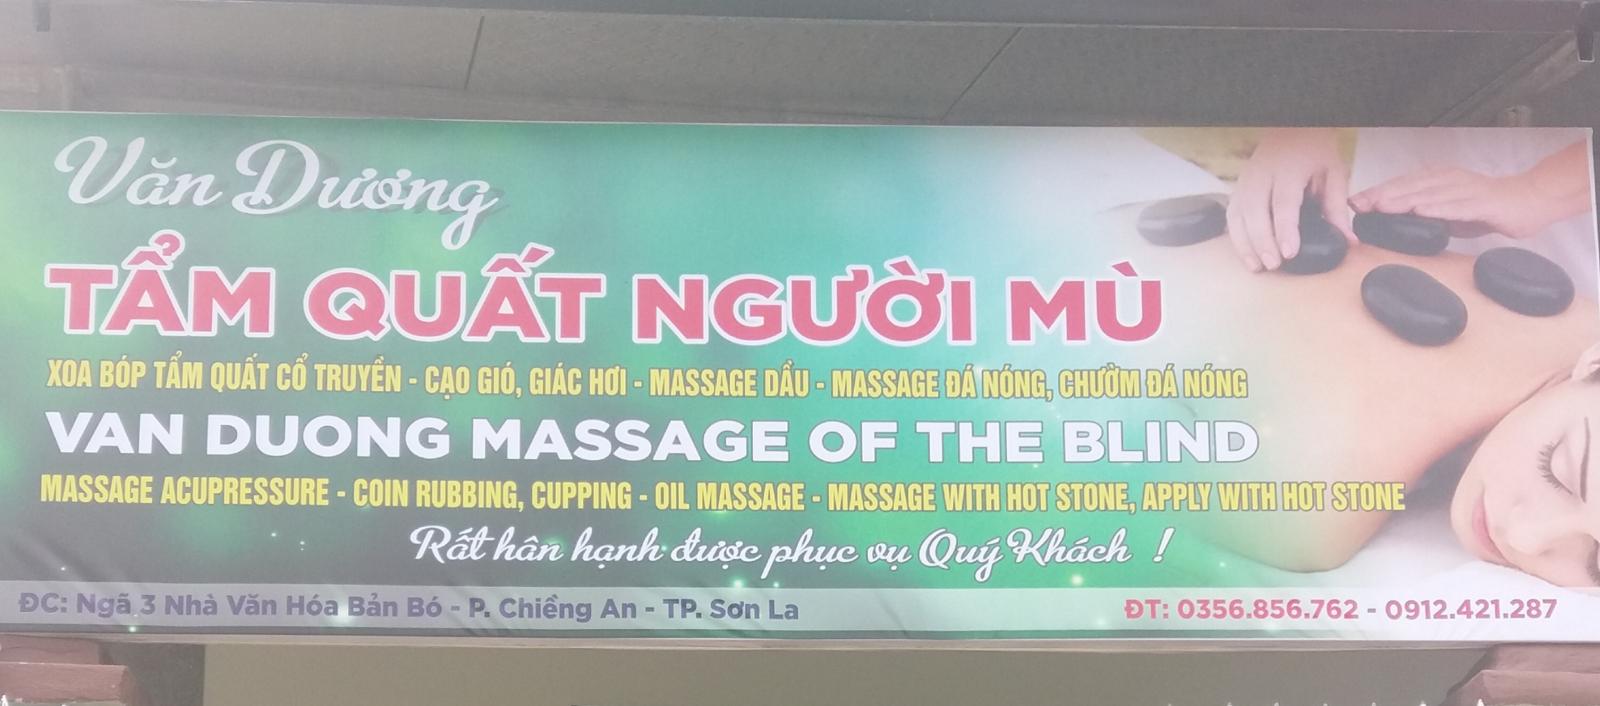 Massage tẩm quất Xoa bóp bấm huyệt Văn Dương - tại tp sơn la 